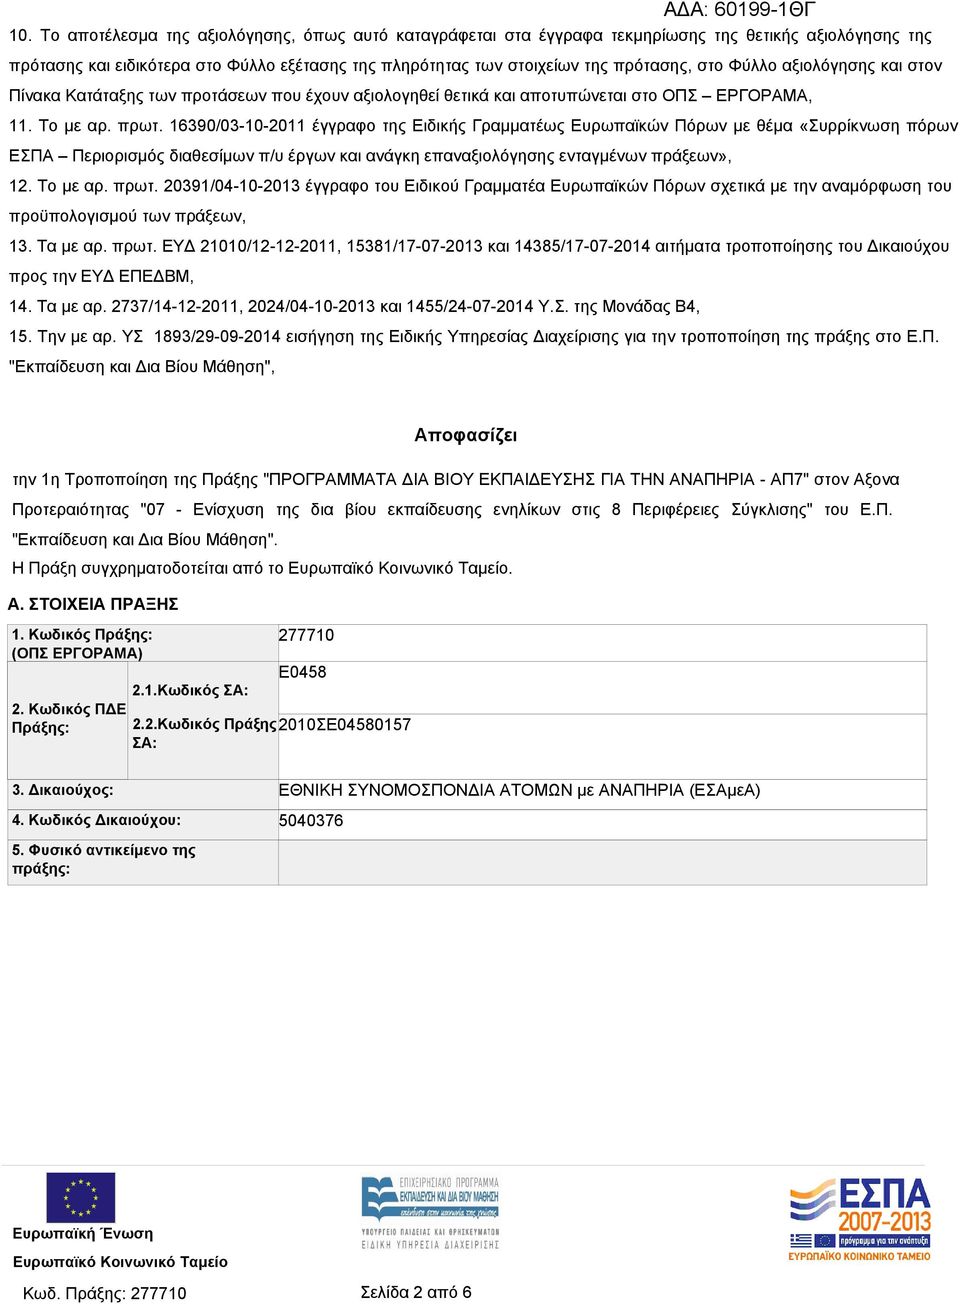 16390/03-10-2011 έγγραφο της Ειδικής Γραμματέως Ευρωπαϊκών Πόρων με θέμα «Συρρίκνωση πόρων ΕΣΠΑ Περιορισμός διαθεσίμων π/υ έργων και ανάγκη επαναξιολόγησης ενταγμένων πράξεων», 12. Το με αρ. πρωτ.